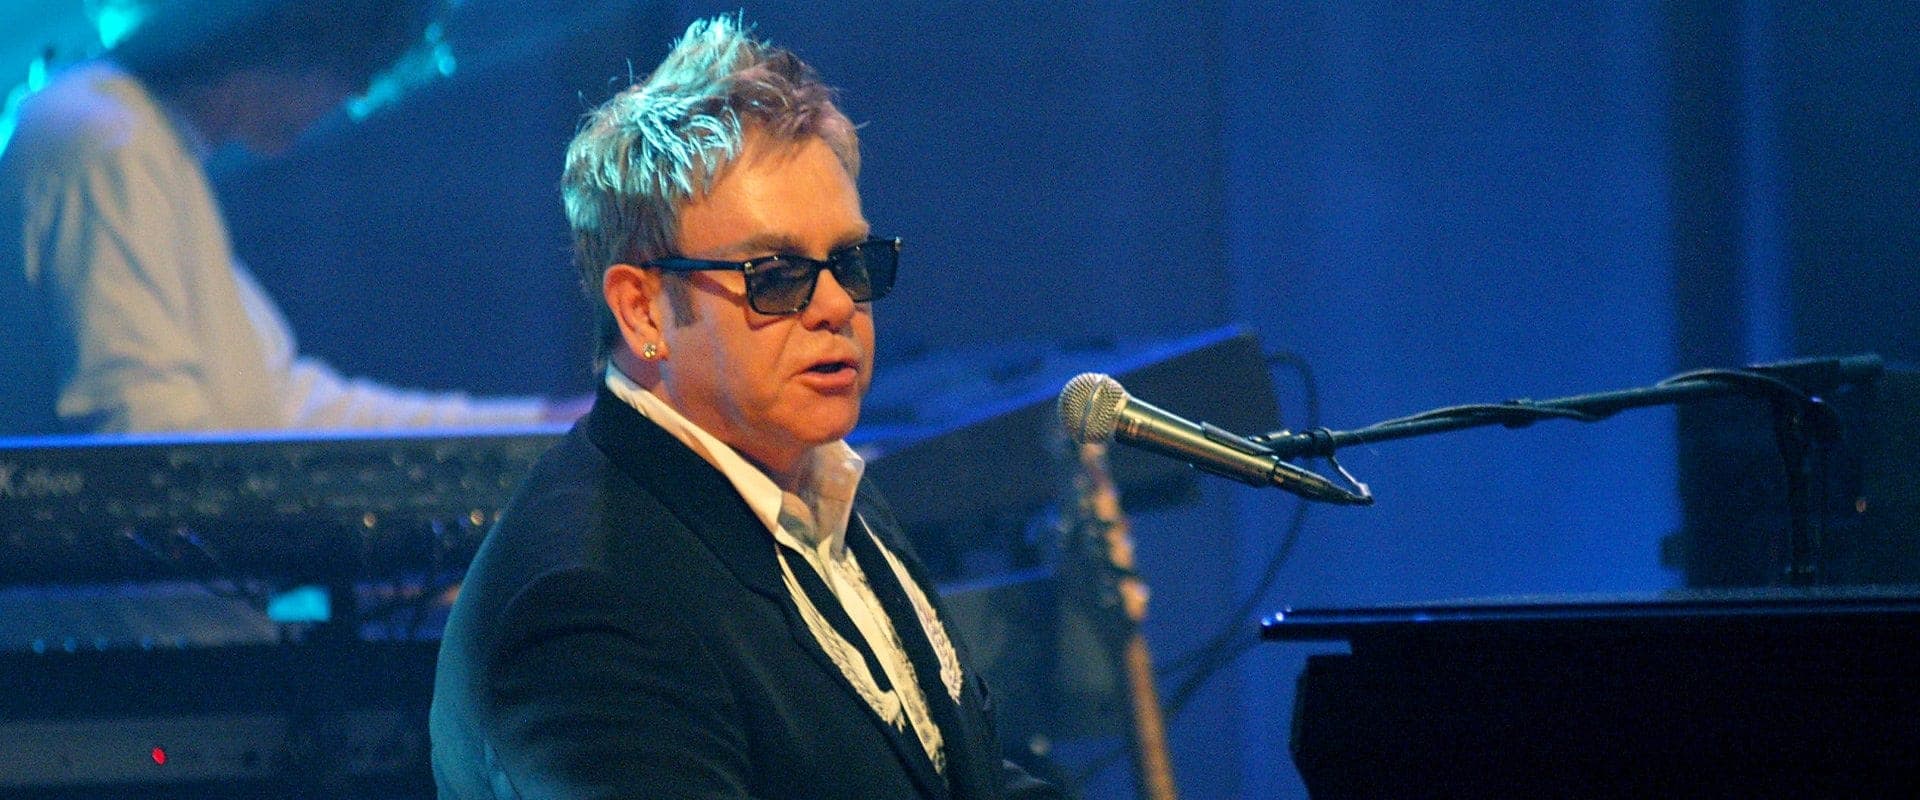 Elton John at the BBC